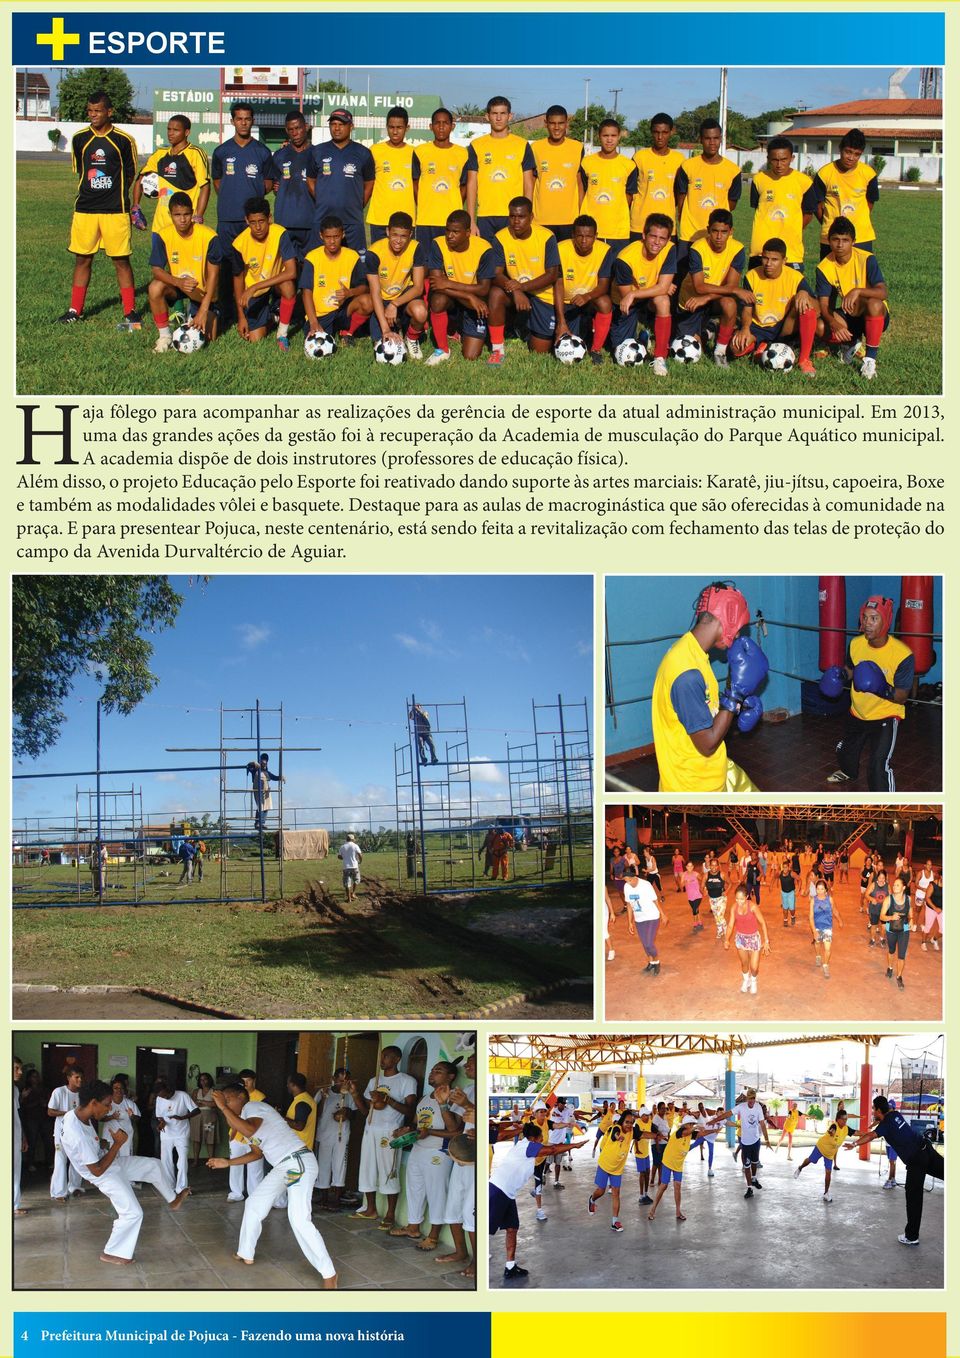 Além disso, o projeto Educação pelo Esporte foi reativado dando suporte às artes marciais: Karatê, jiu-jítsu, capoeira, Boxe e também as modalidades vôlei e basquete.